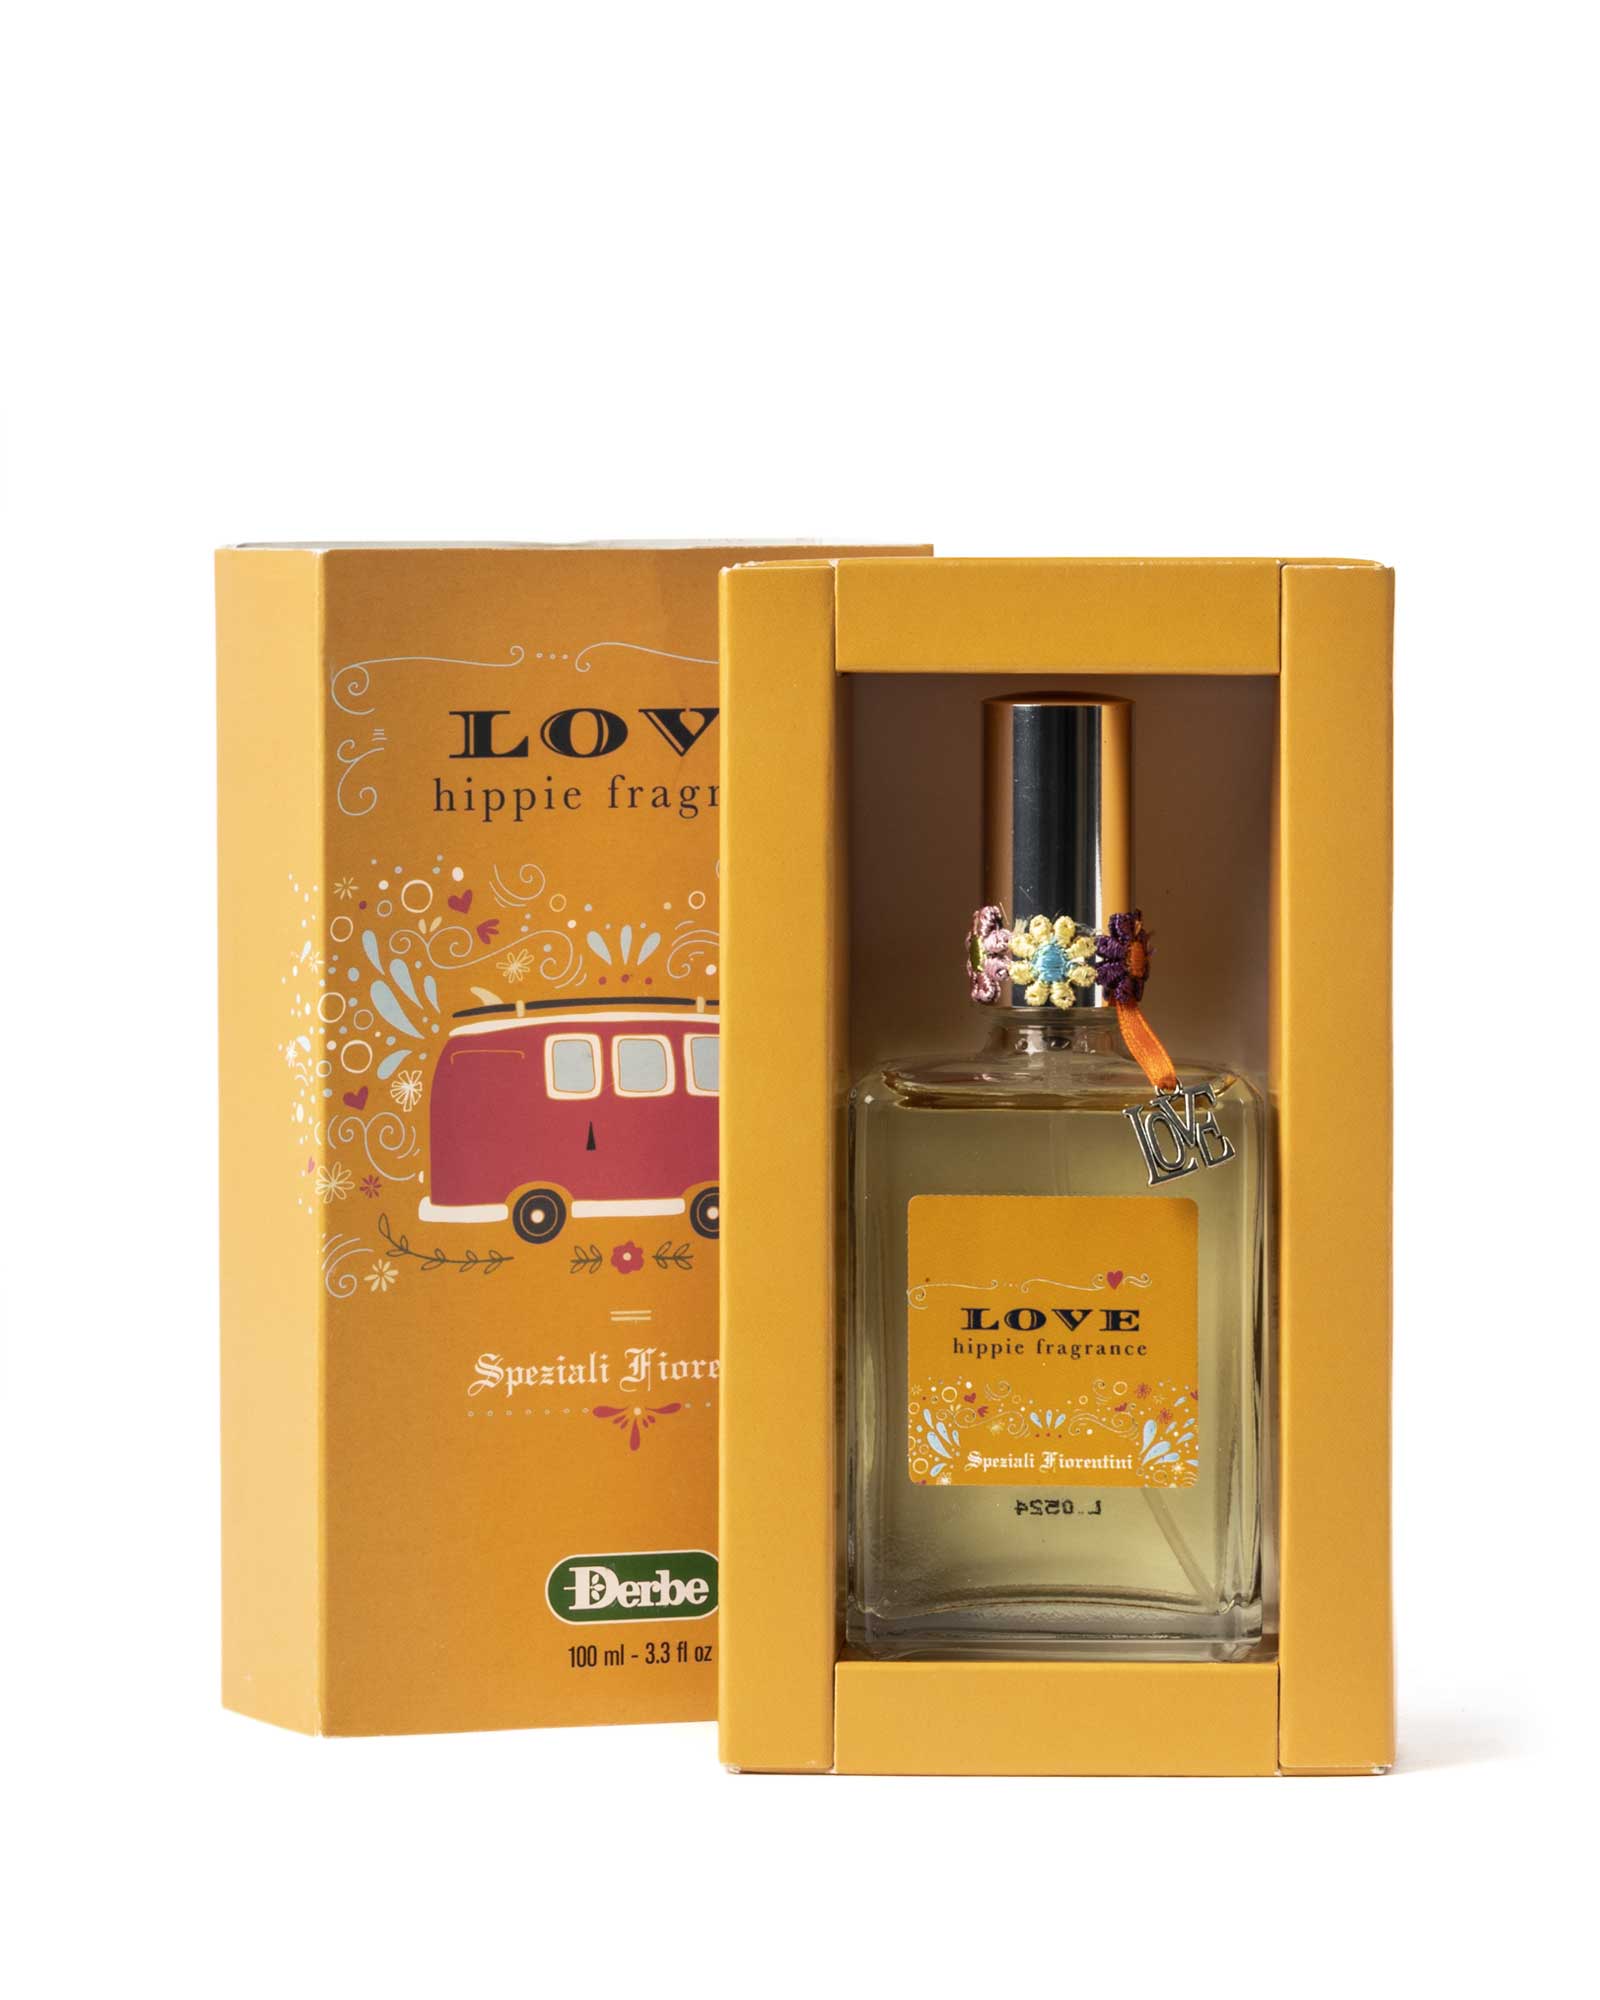 profumo-love-hippie-fragrance-speziali-fiorentini-scatola-prodotto-derbe